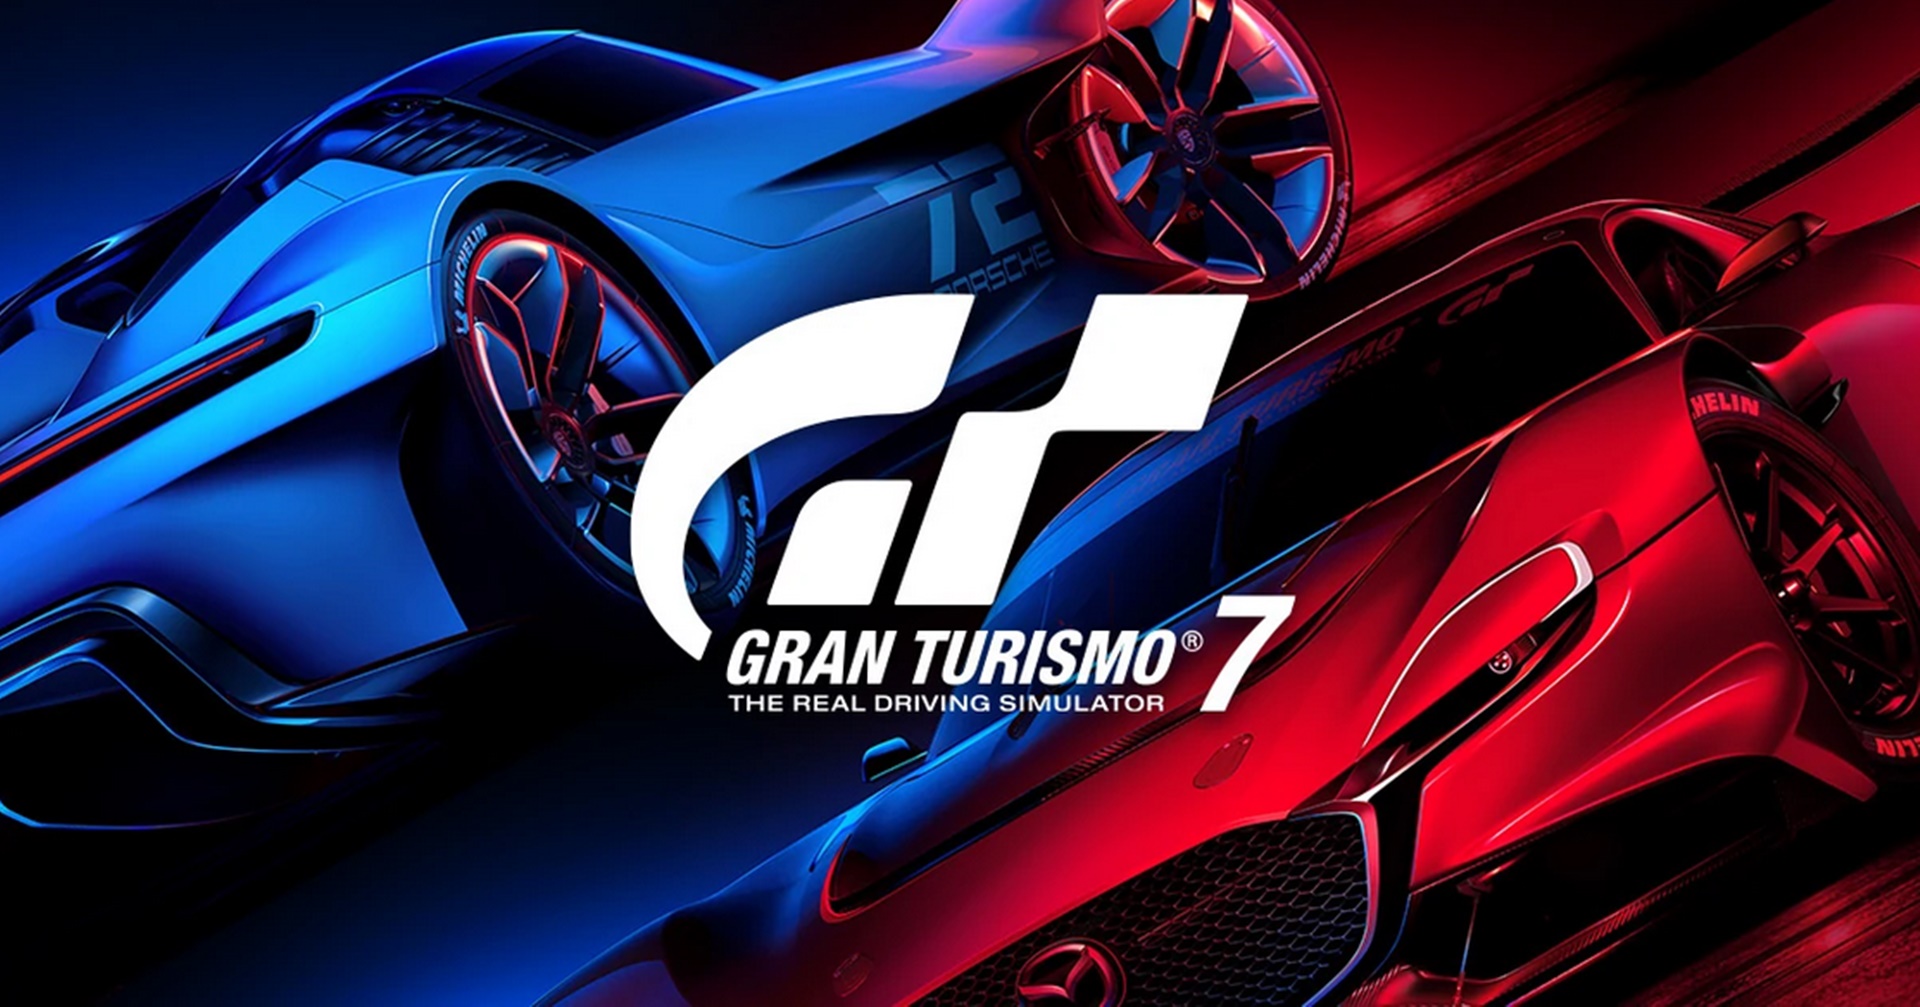 เกม Gran Turismo 7 เปิดตัวแรงขายดีสุดในอังกฤษ  Elden Ring ลงมาที่ 2